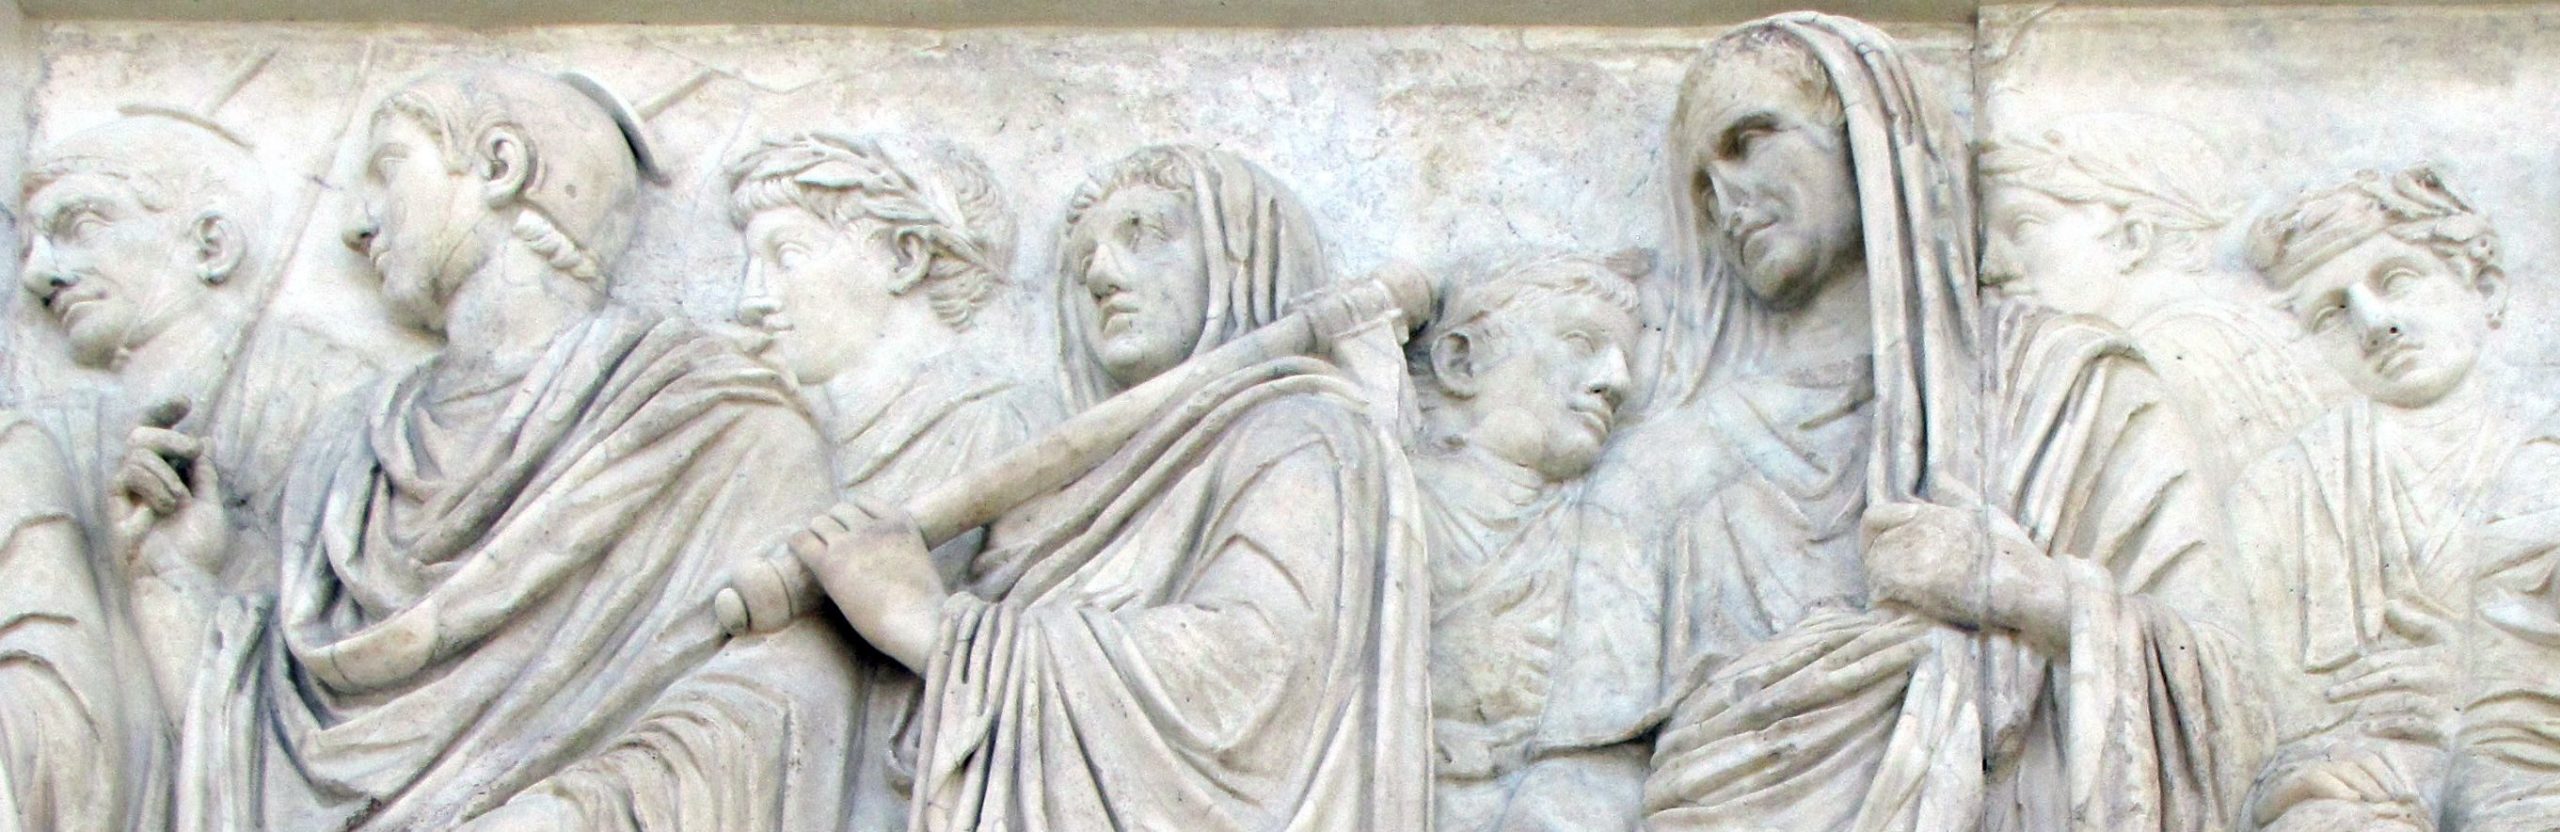 Ara Pacis en Roma, en el fondo está el emperador Augusto con la cabeza cubierta.